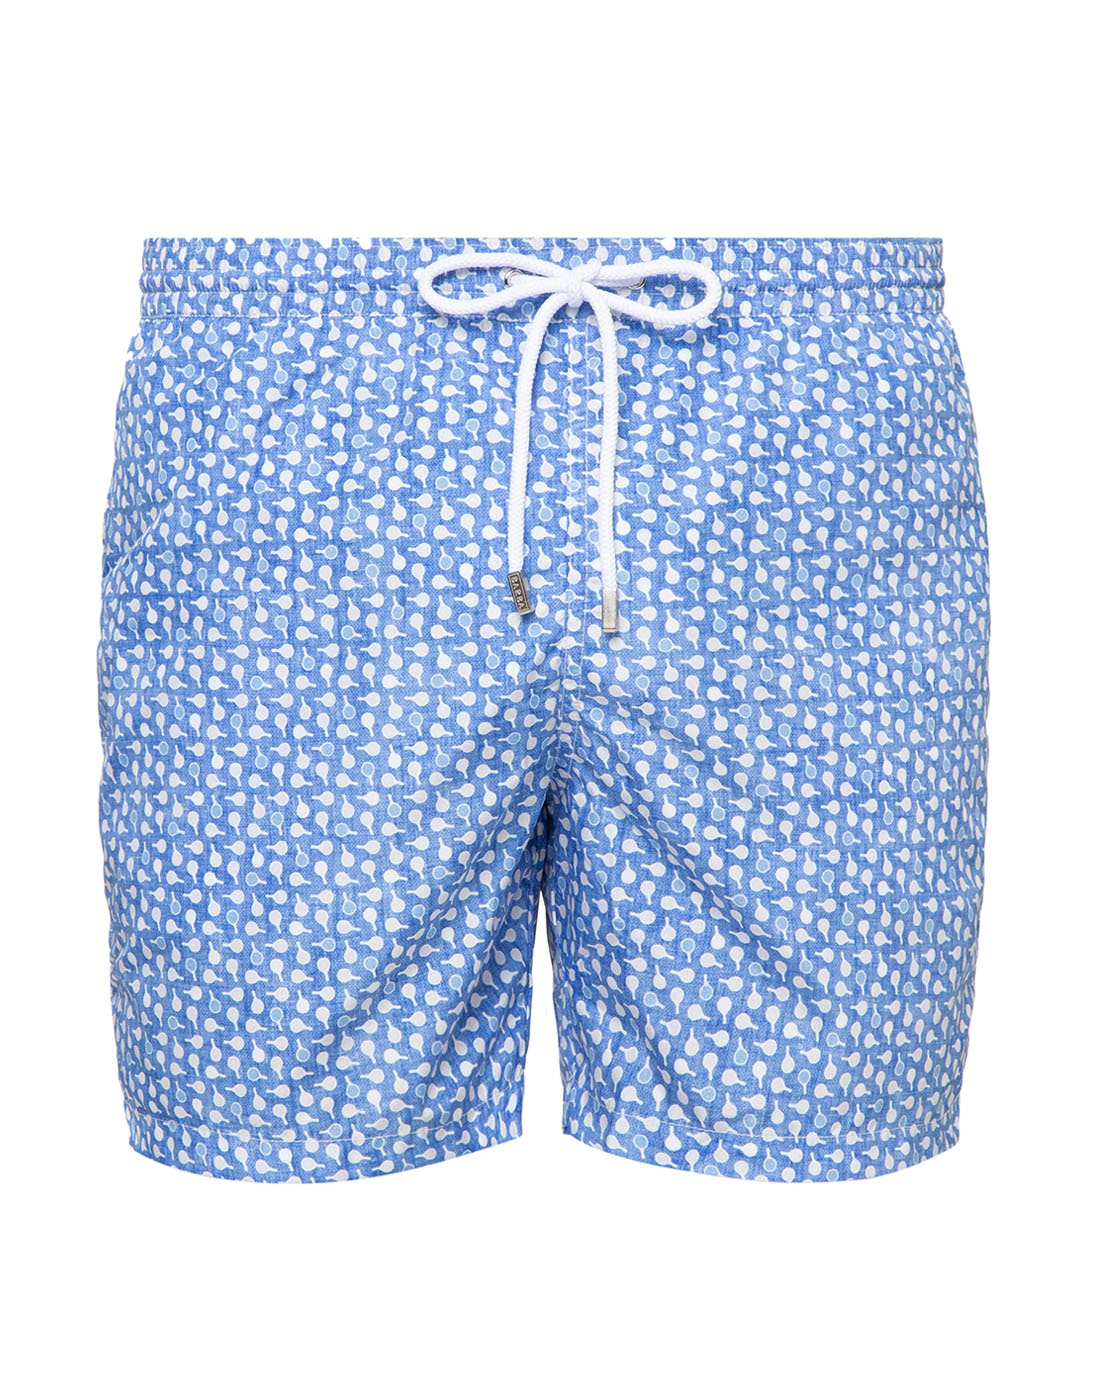 Мужские голубые шорты для плавания с принтом Barba SCOST_1612003-1